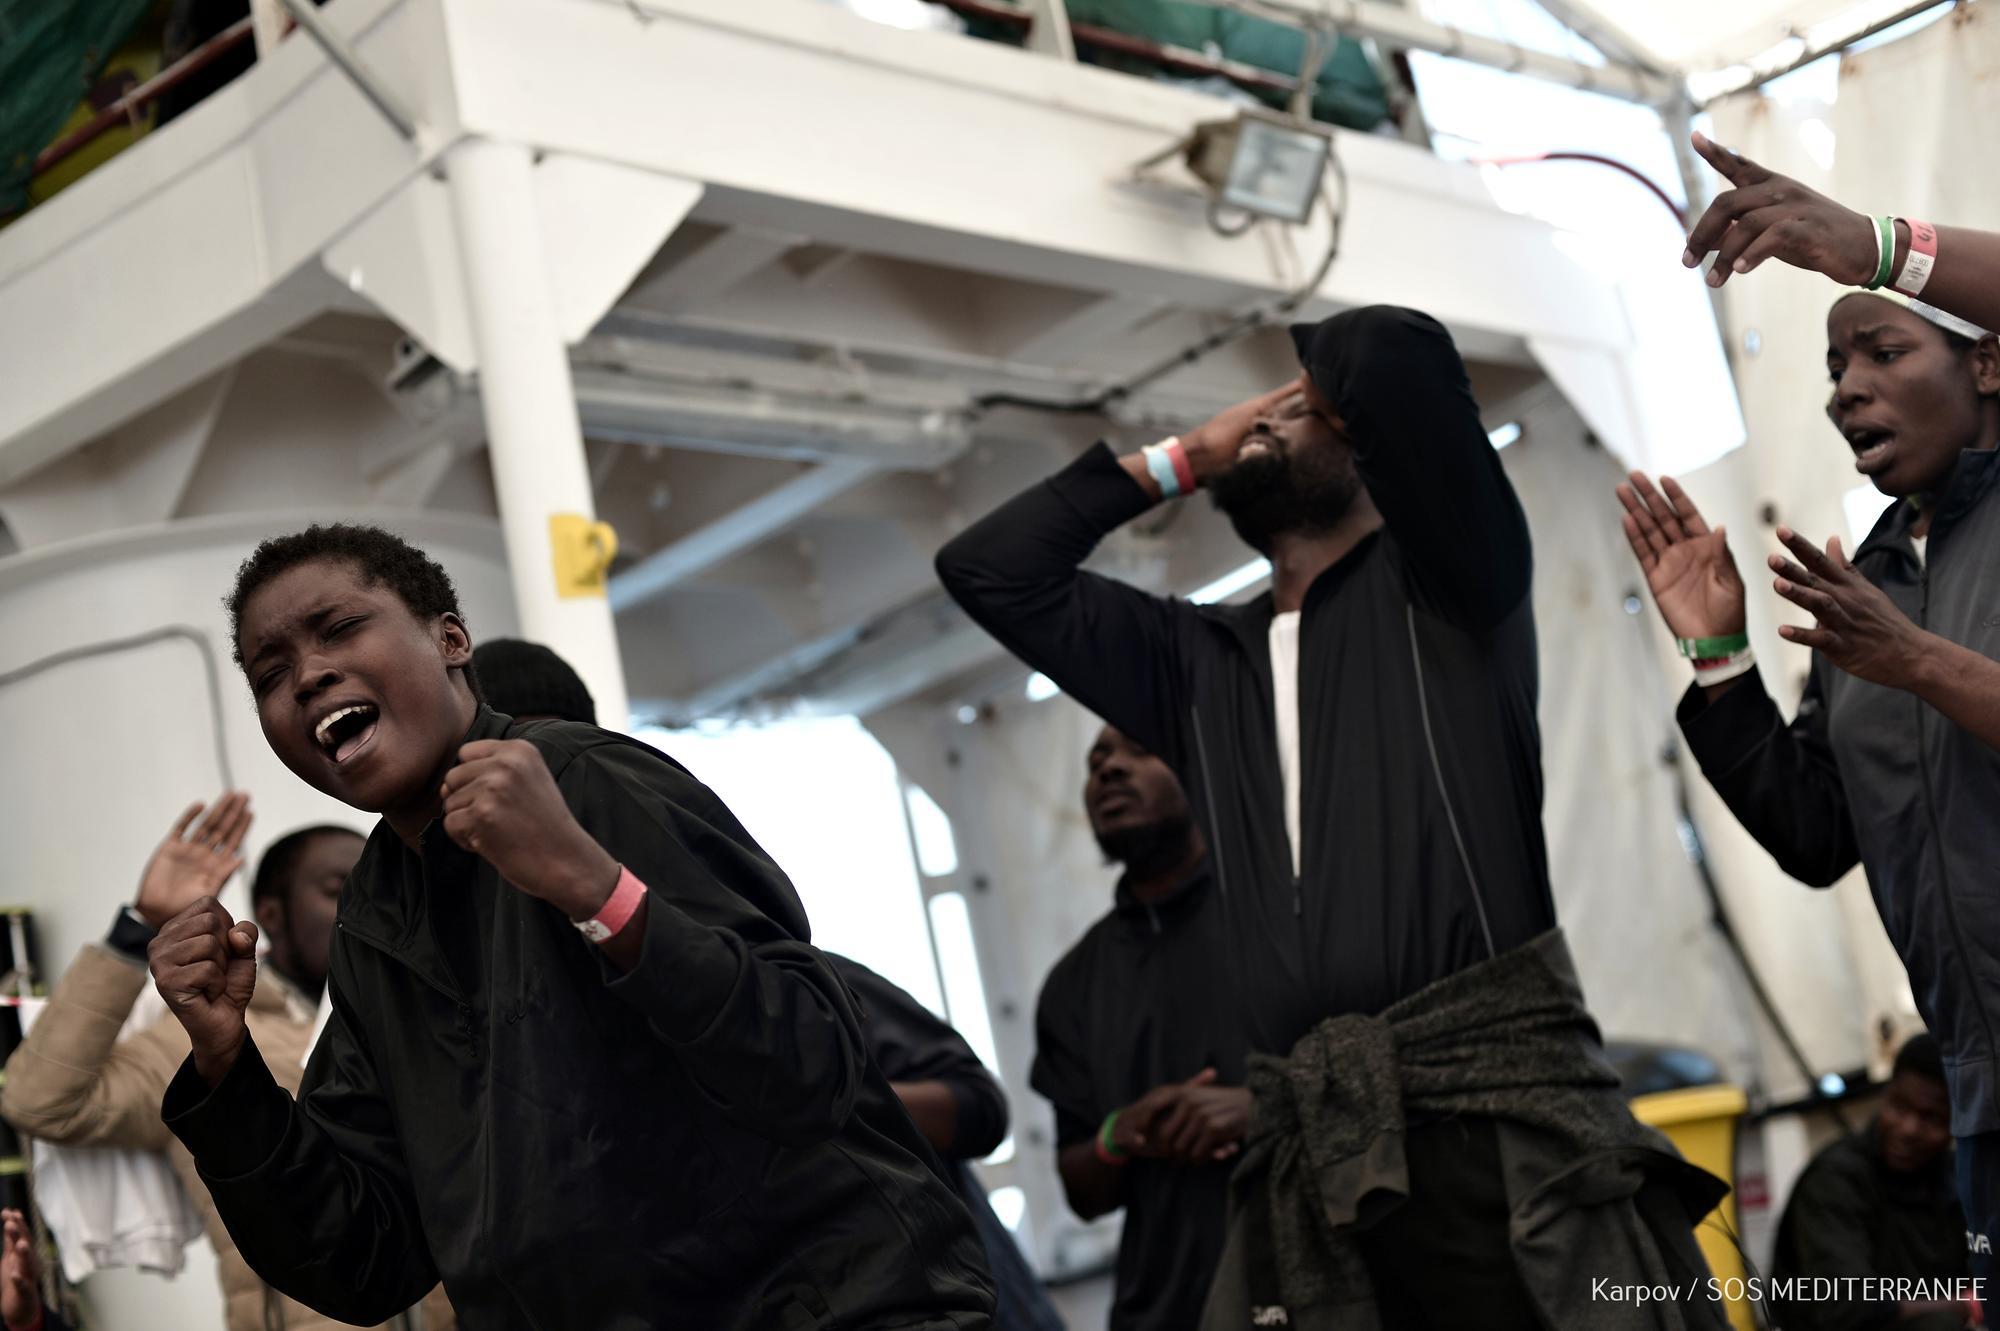 Personas migrantes rescatadas por el Aquarius en las costas de Libia rezan y celebran haber sido llevadas al puerto seguro de València